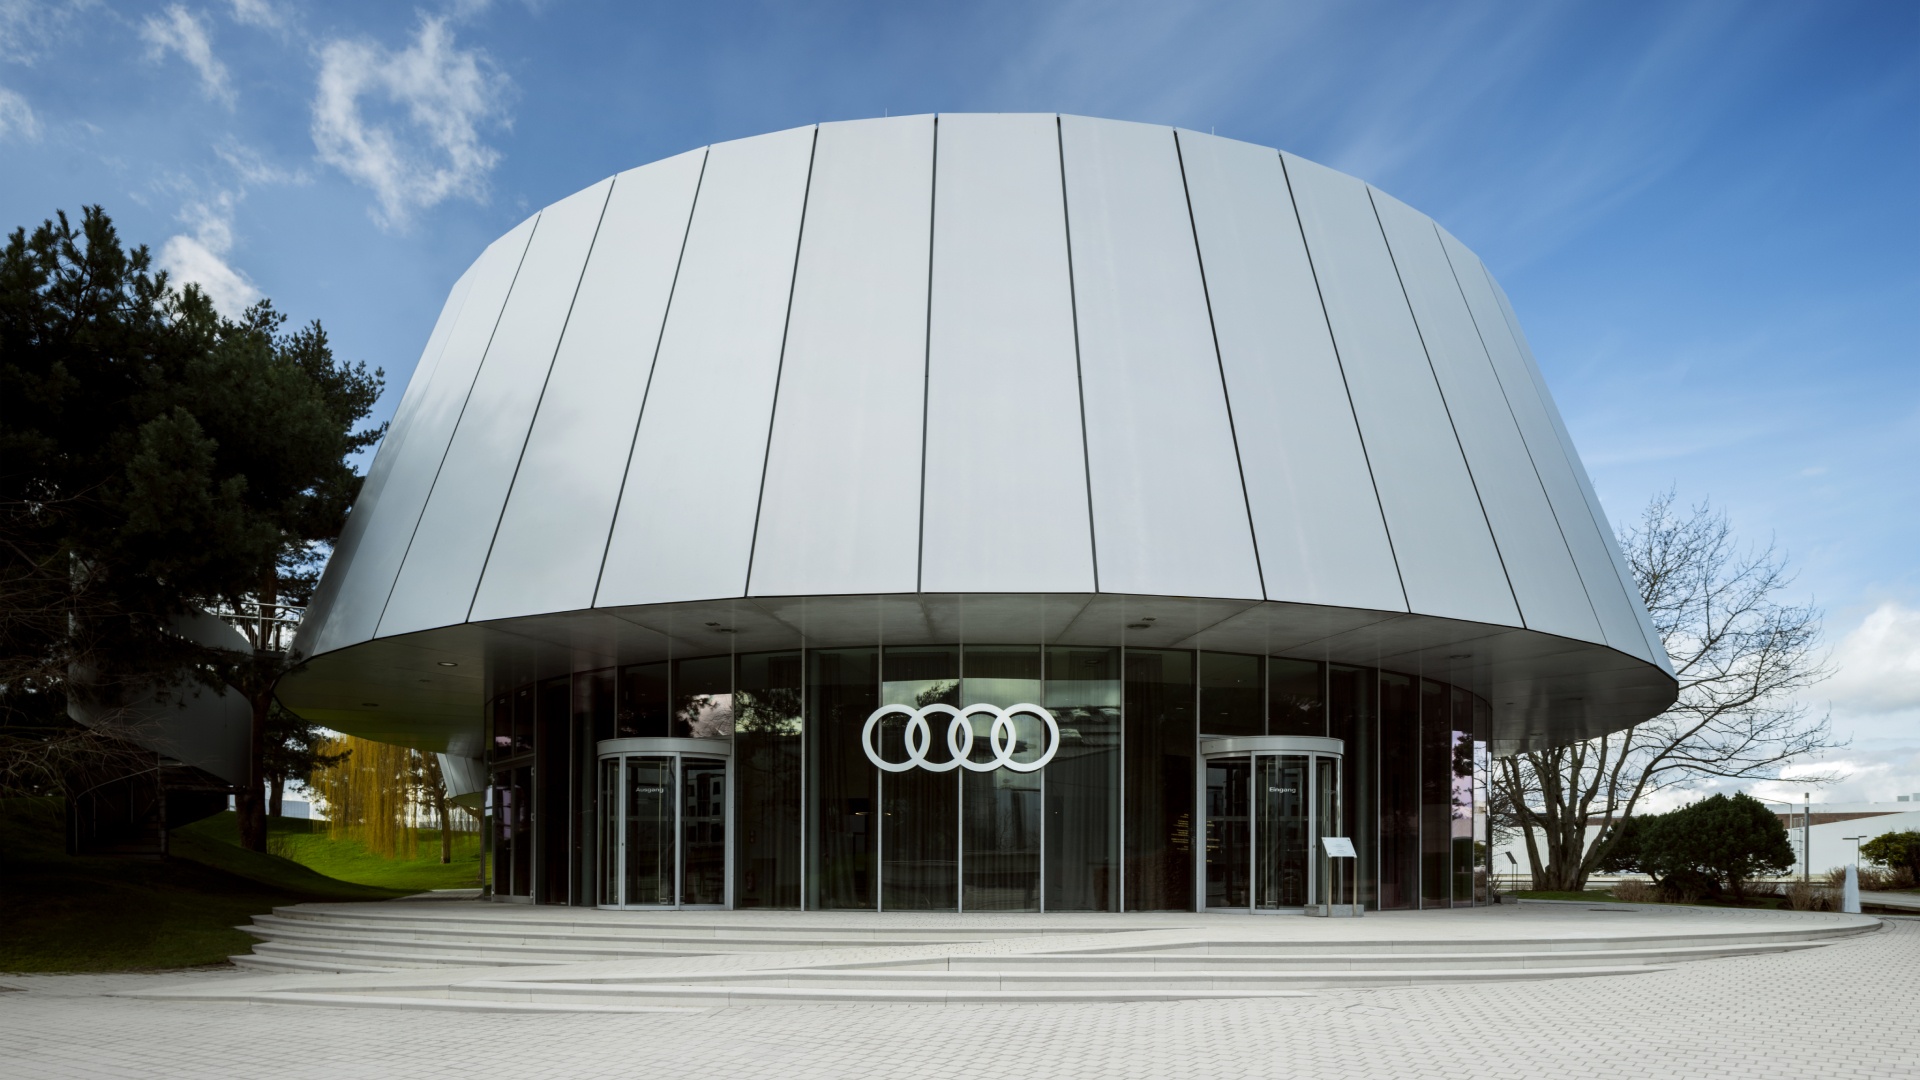 Audi House of Progress in Autostadt Wolfsburg.